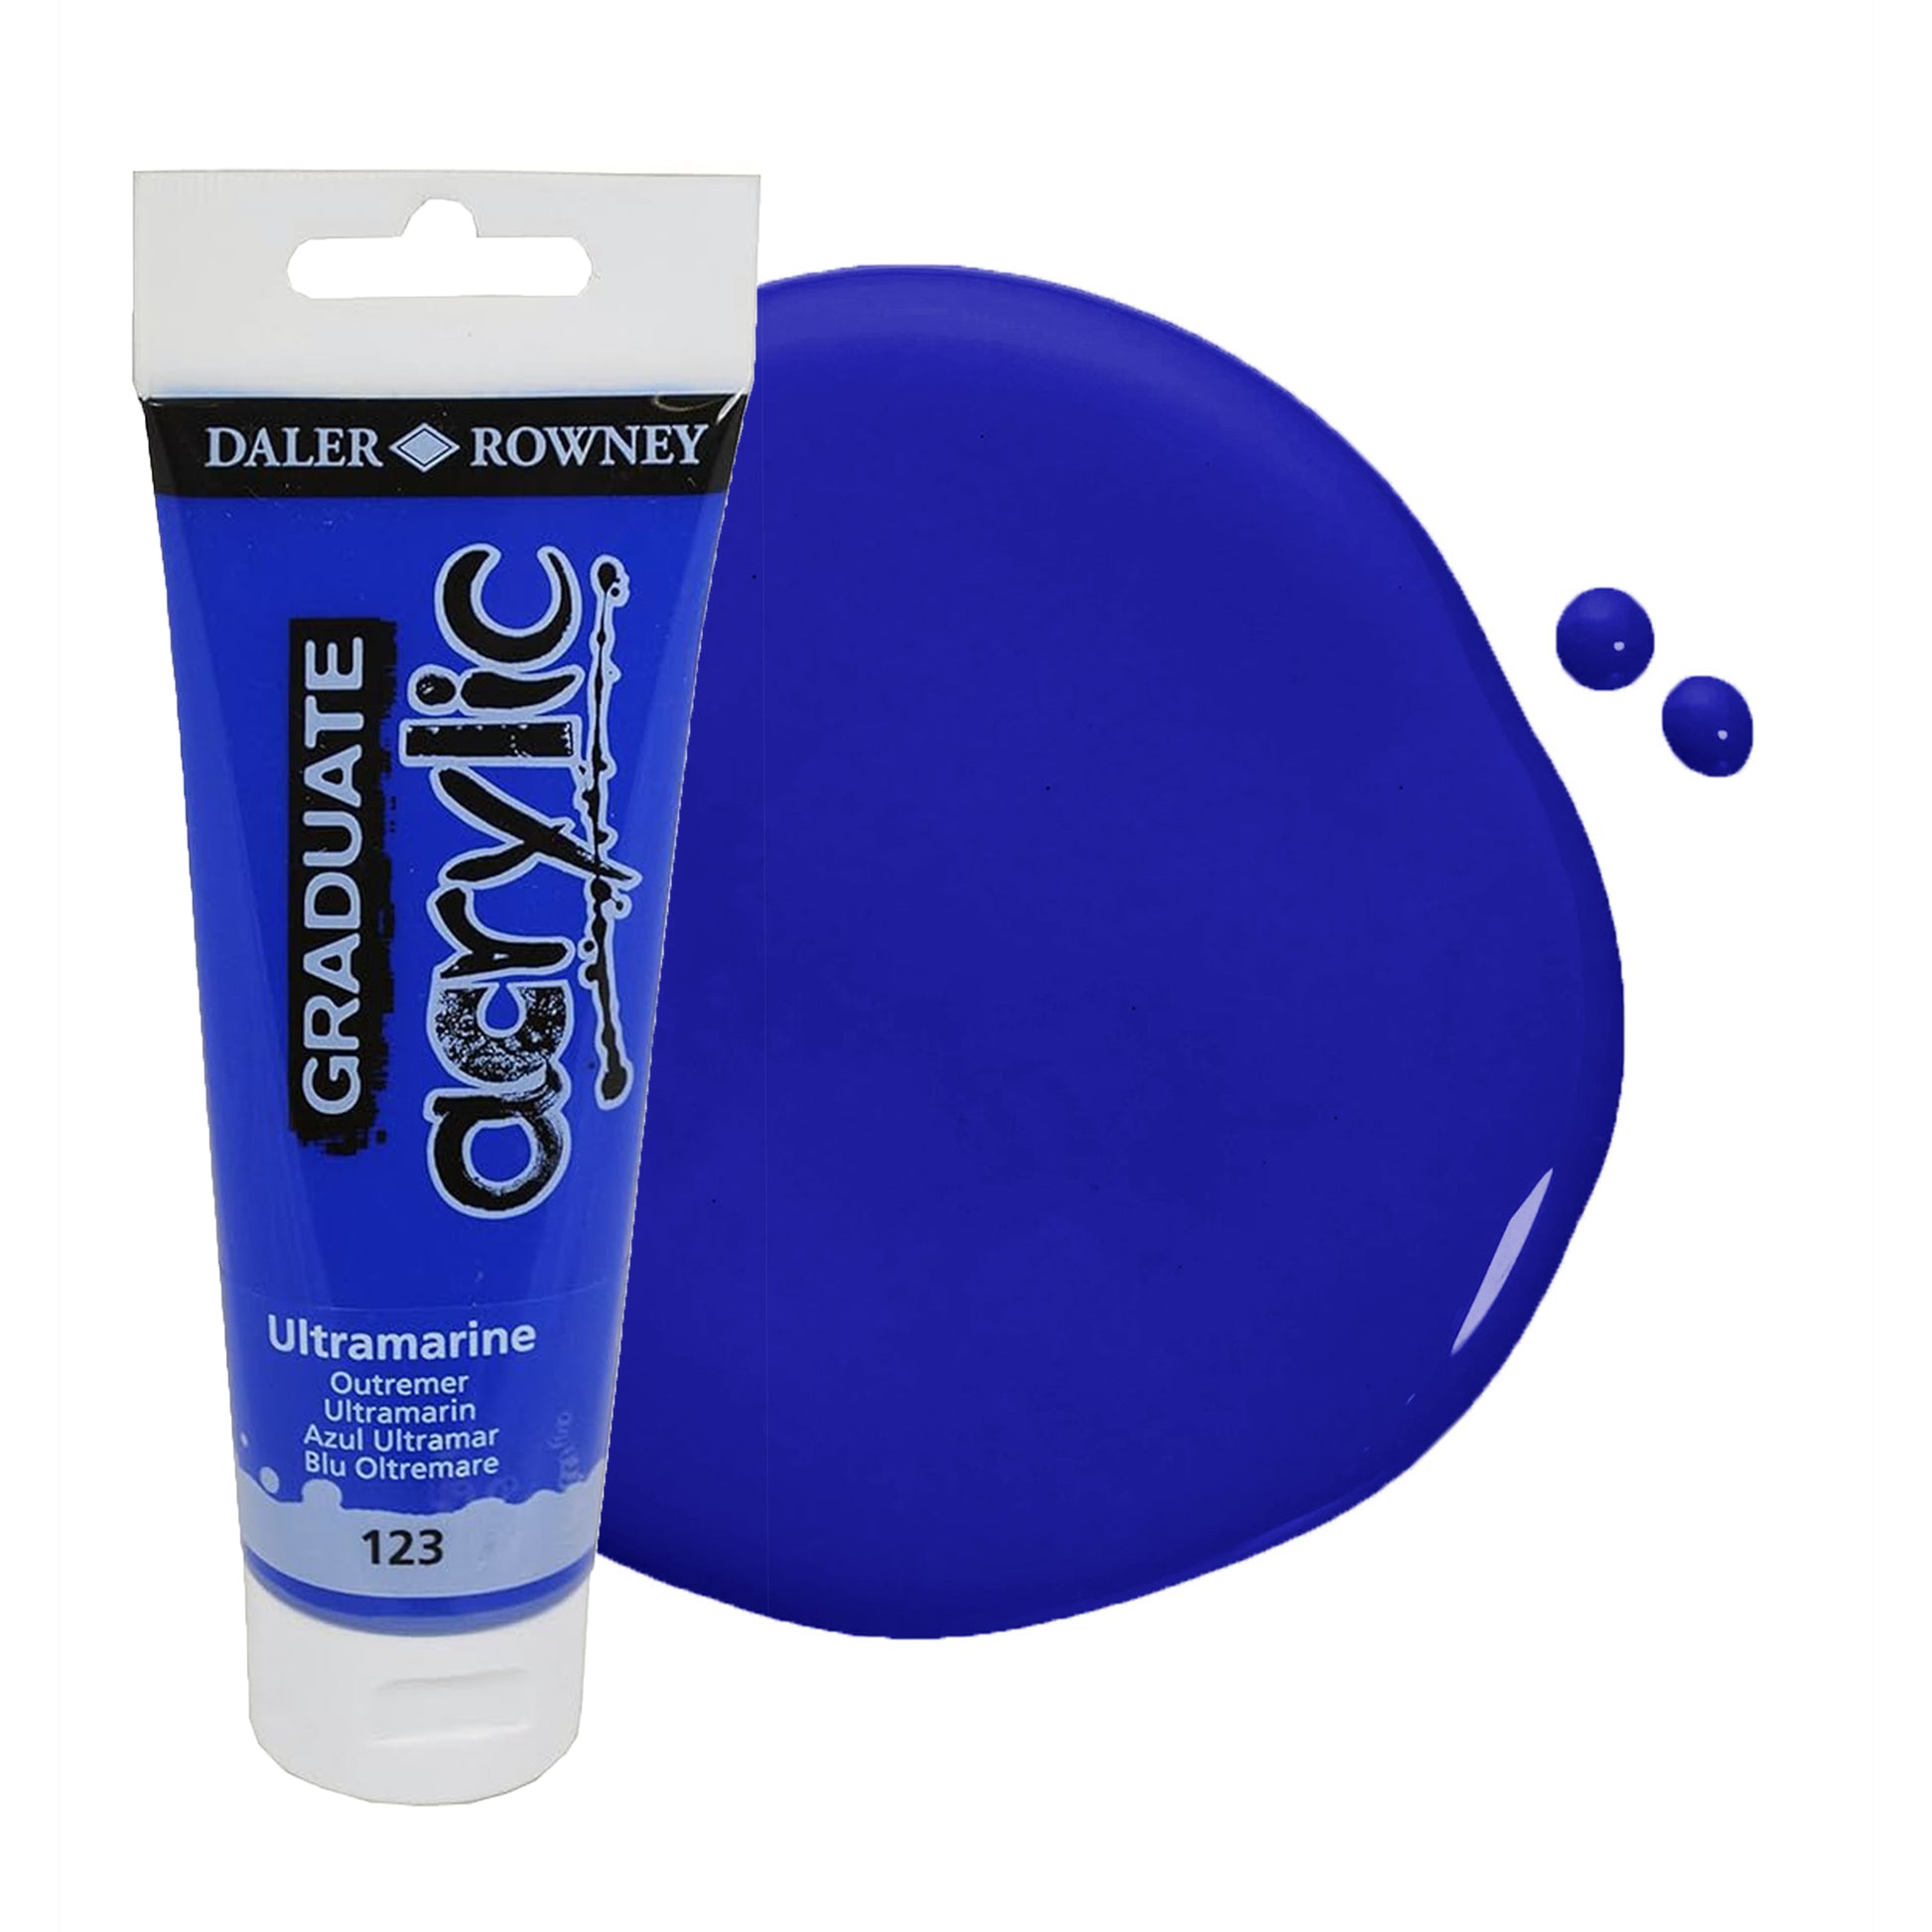 Daler & Rowney beginner's blue acrylic paint tube